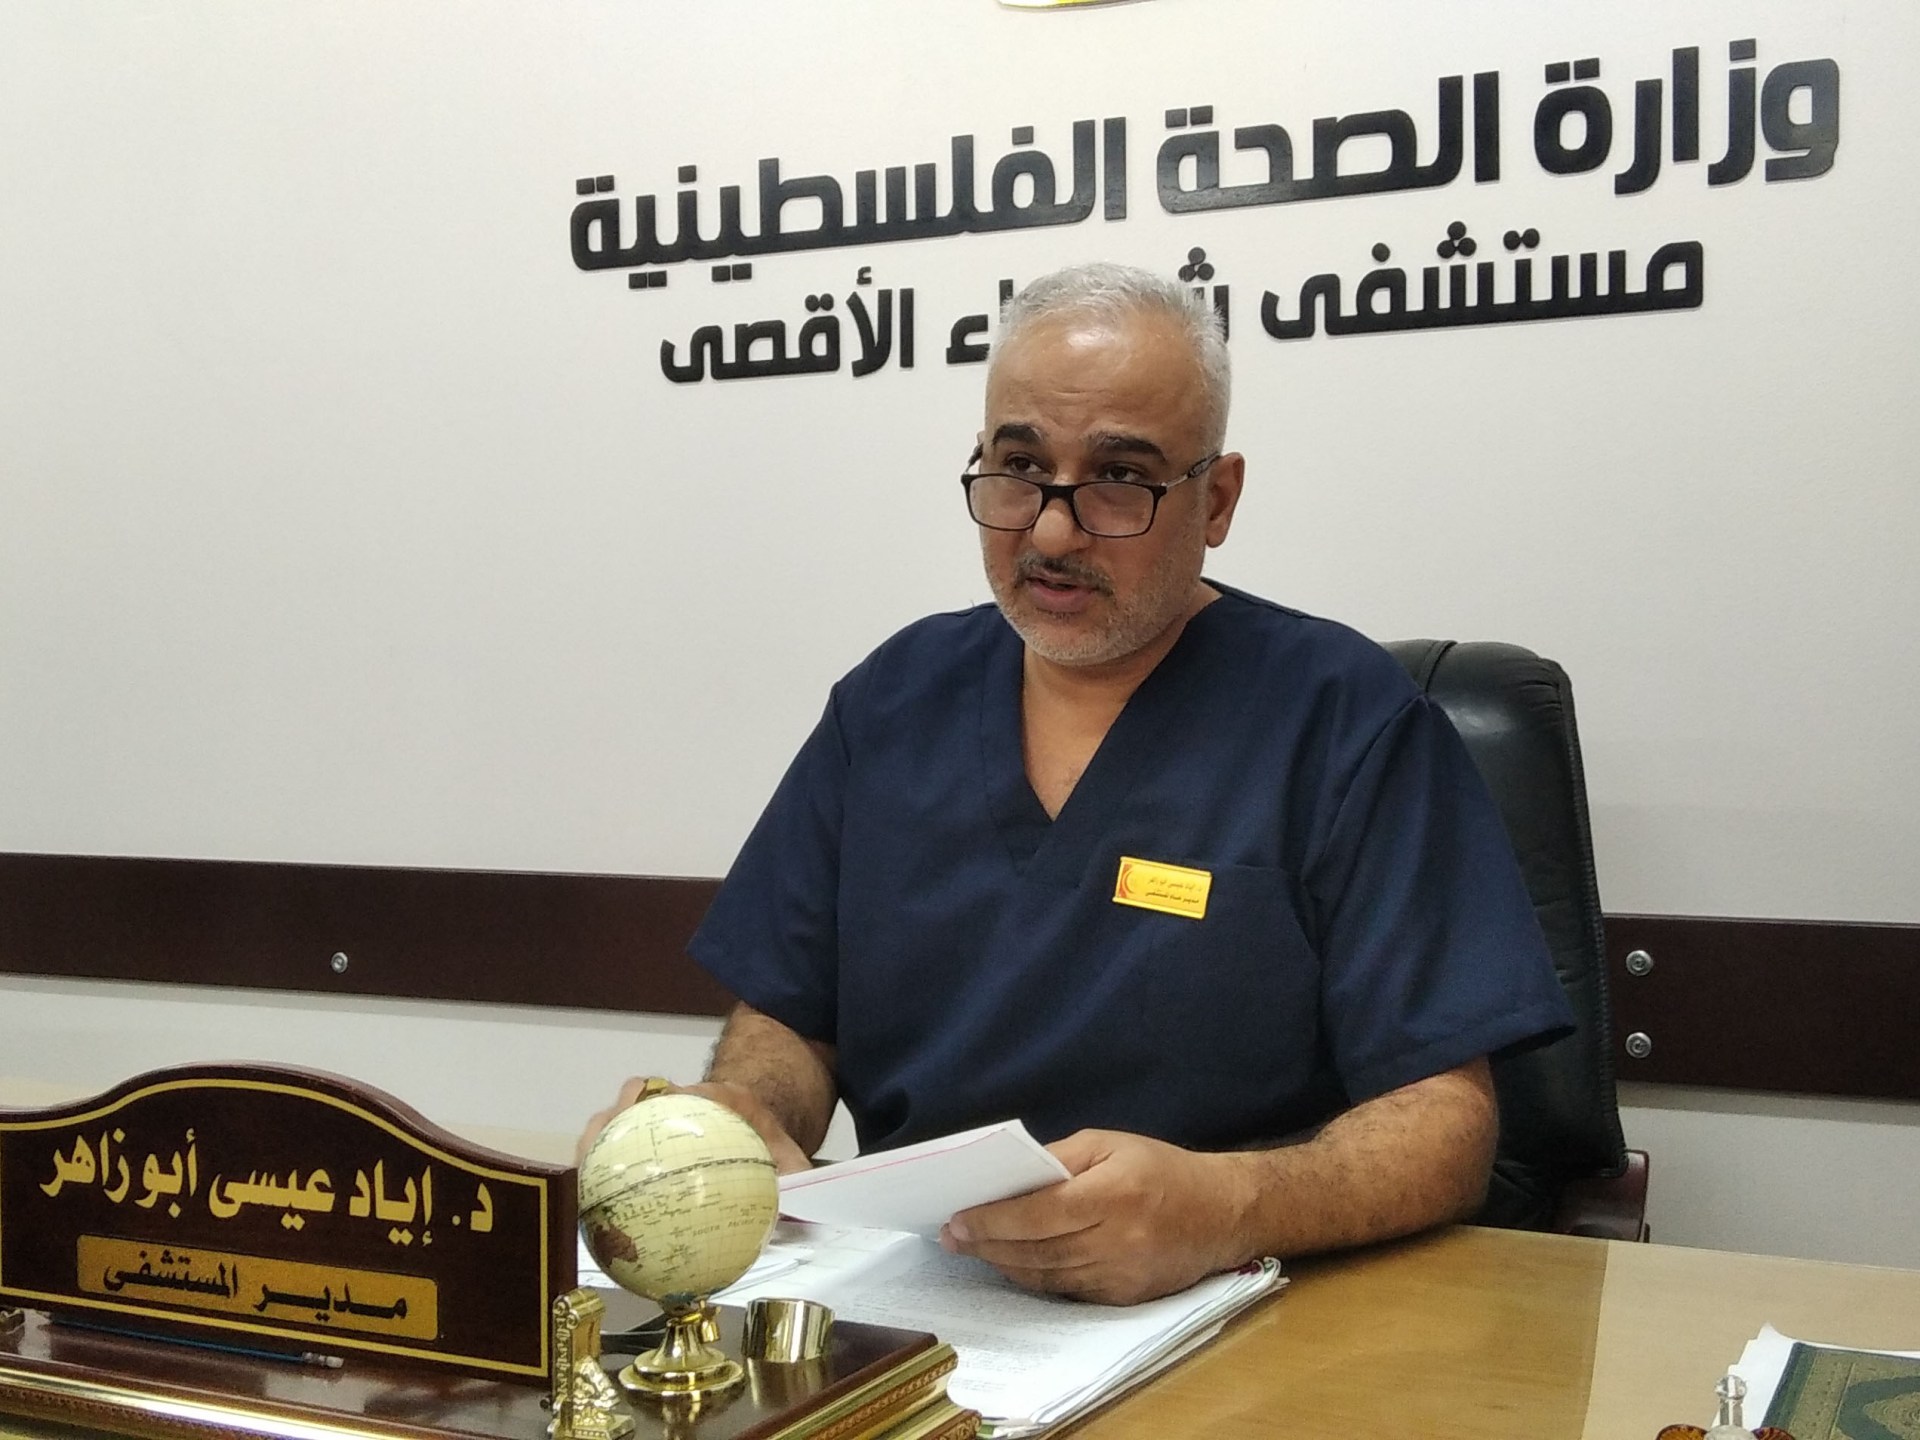 مدير مستشفى شهداء الأقصى: الوضع كارثي والمساعدات لا تكفي ليومين | سياسة – البوكس نيوز